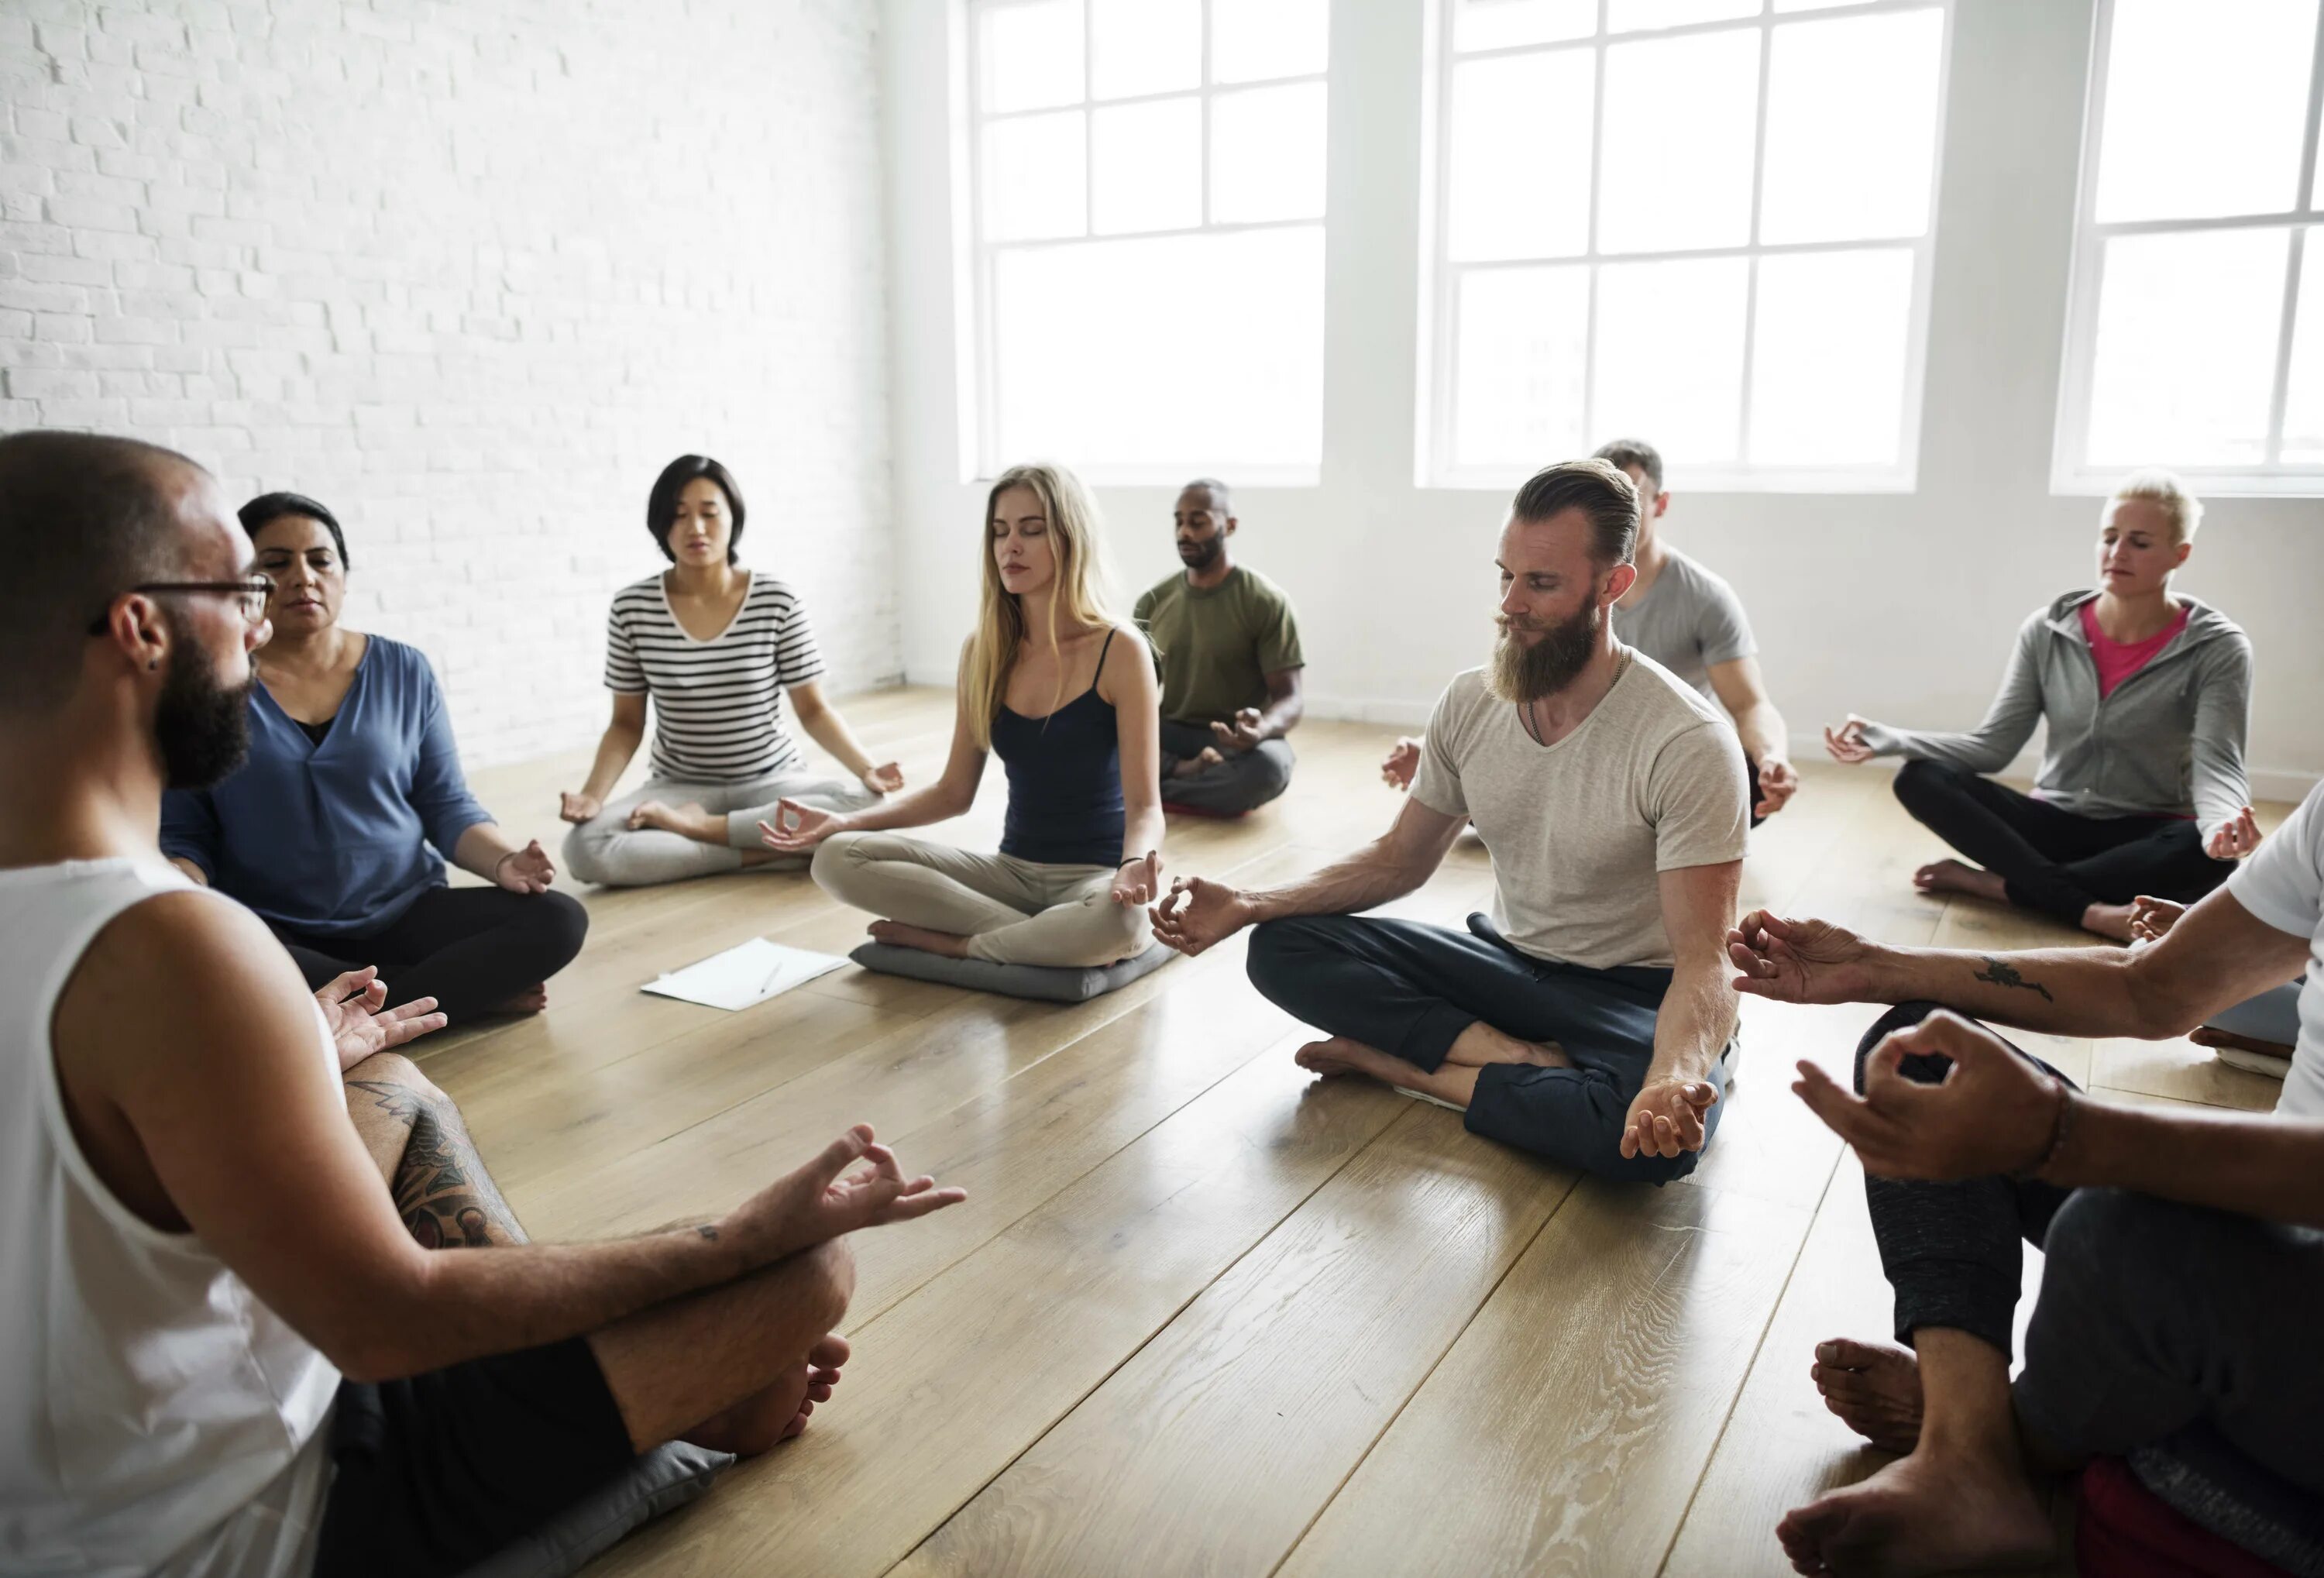 Вроде практик. Групповая медитация. Медитация группа людей. Группа людей медитируют. Коллективная медитация.